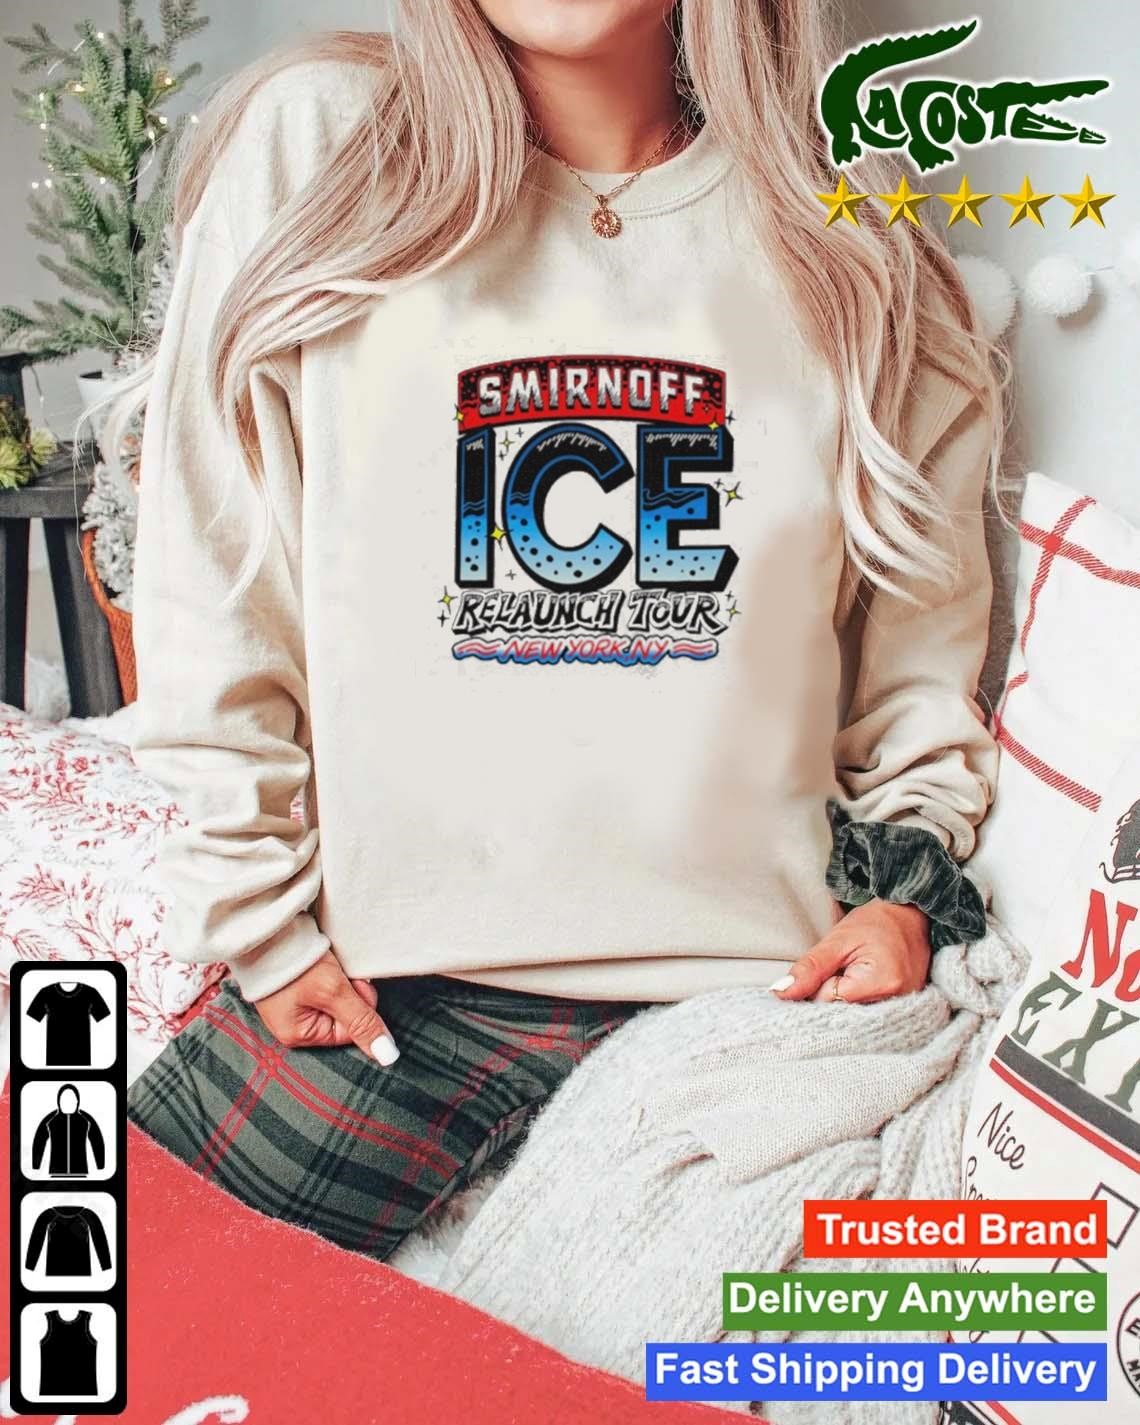 Smirnoff Ice Relaunch Tour New York Ny Sweatshirt Mockup Sweater.jpg